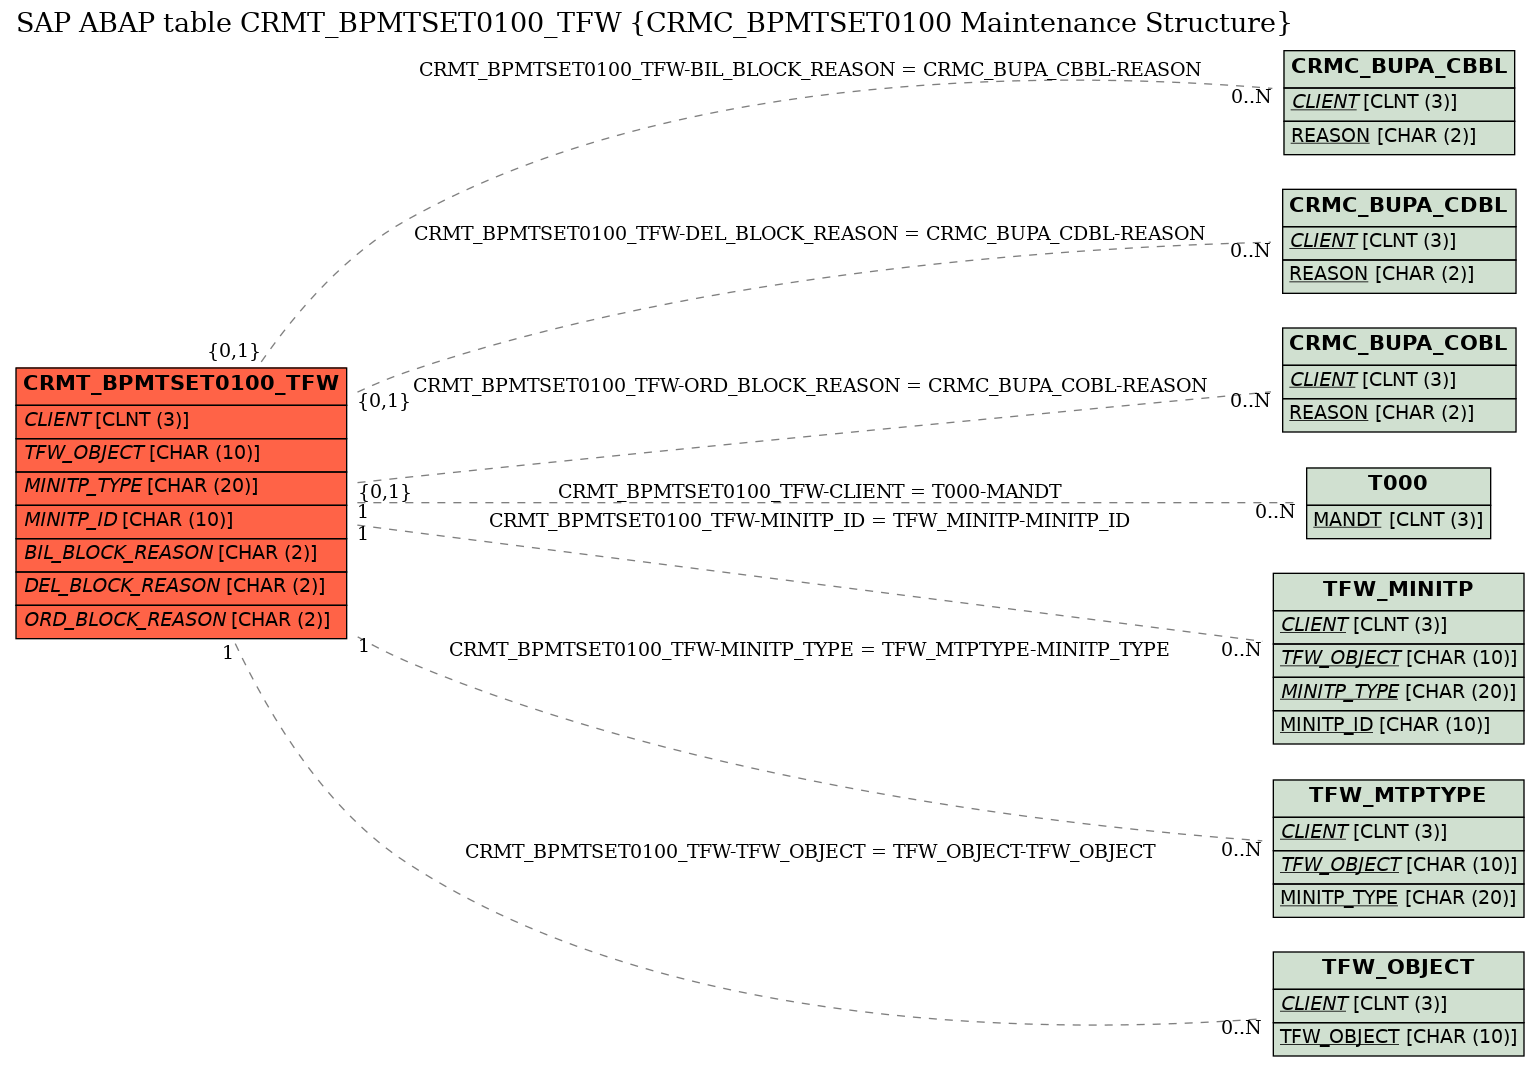 E-R Diagram for table CRMT_BPMTSET0100_TFW (CRMC_BPMTSET0100 Maintenance Structure)